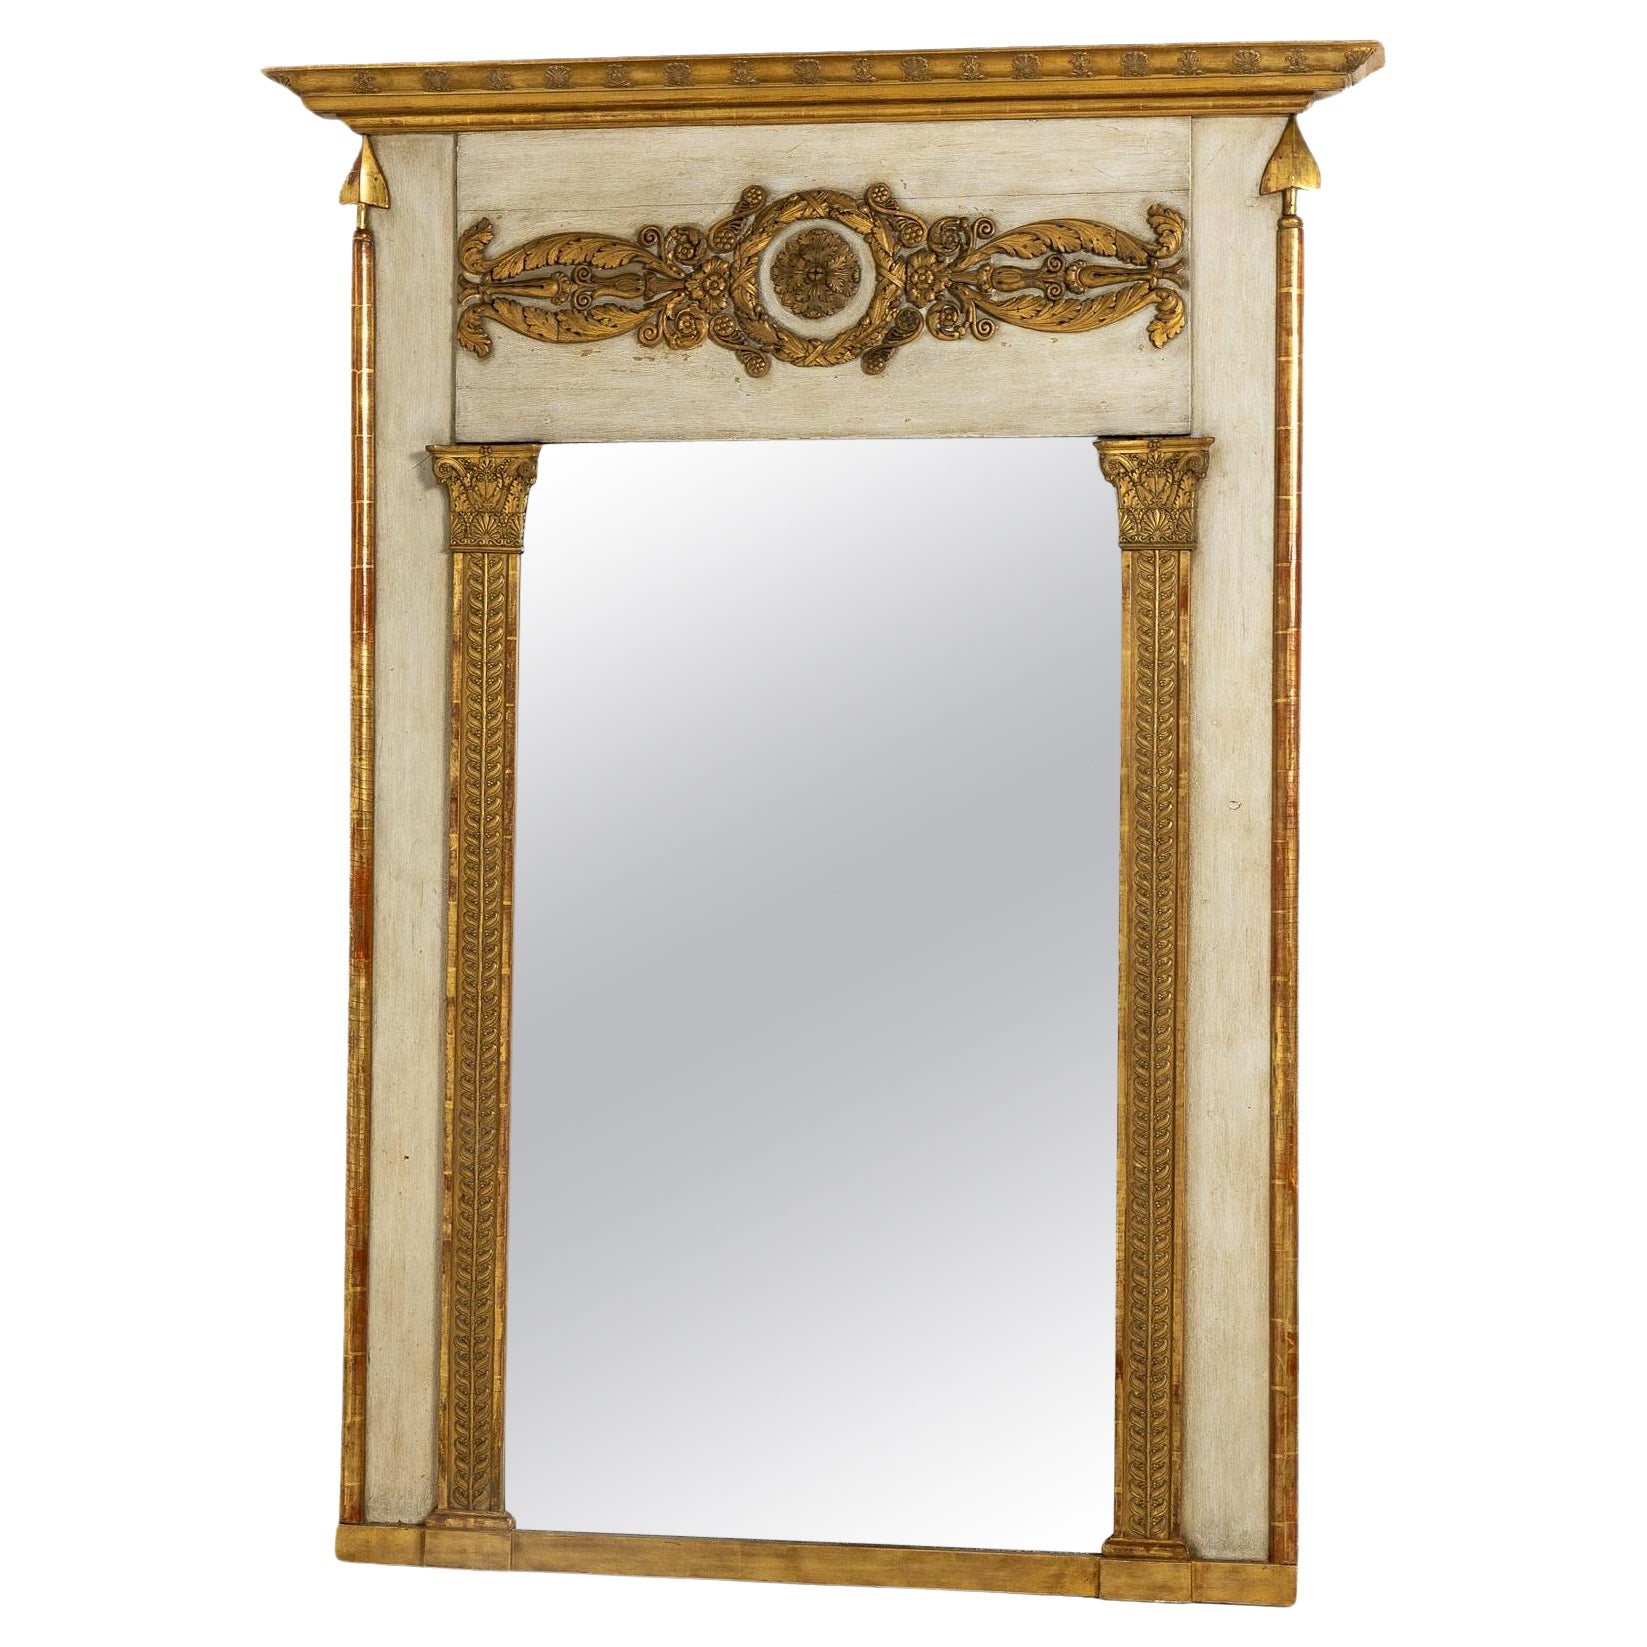 Grand miroir français du 19ème siècle, doré et peint